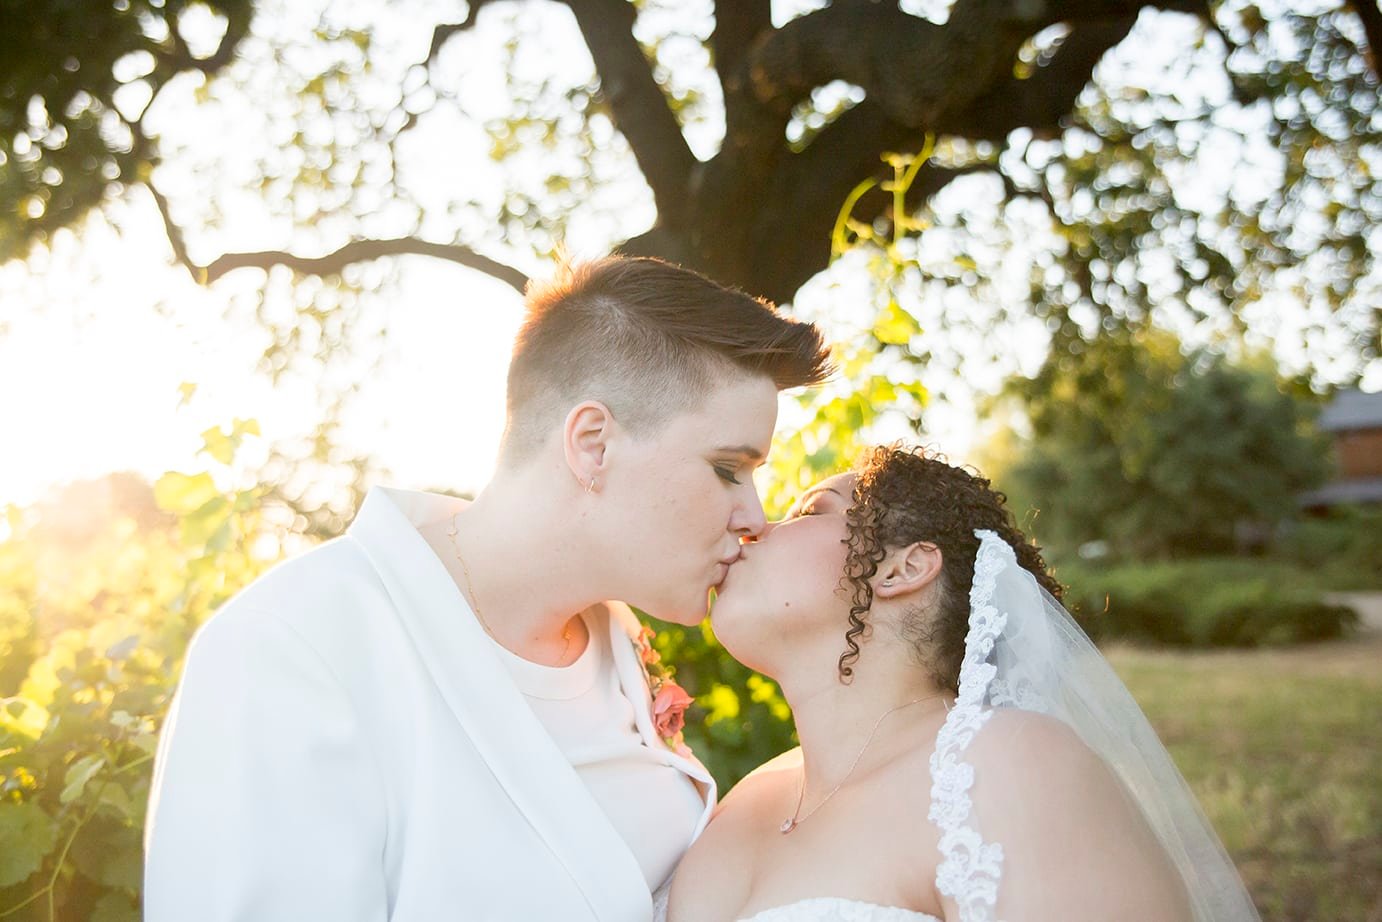 Brides kiss at sunset at Roblar Winery in Santa Ynez, CA 